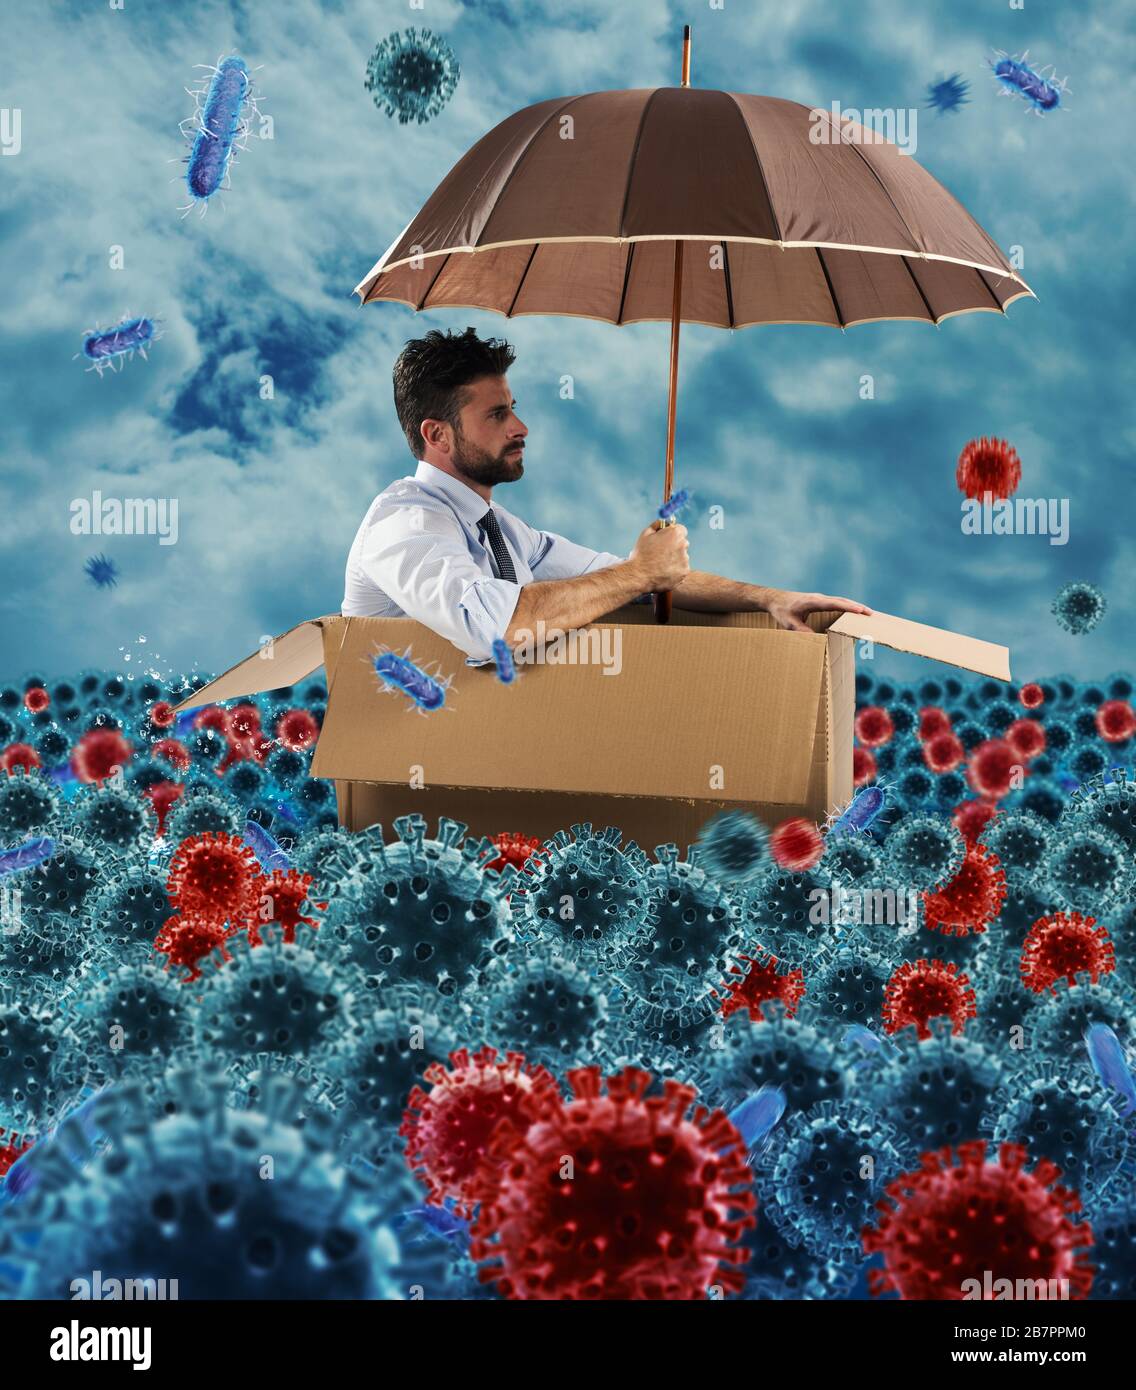 Un homme d'affaires désespéré flotte avec un carton dans une mer de virus et de bactéries. Concept de pandémie Banque D'Images